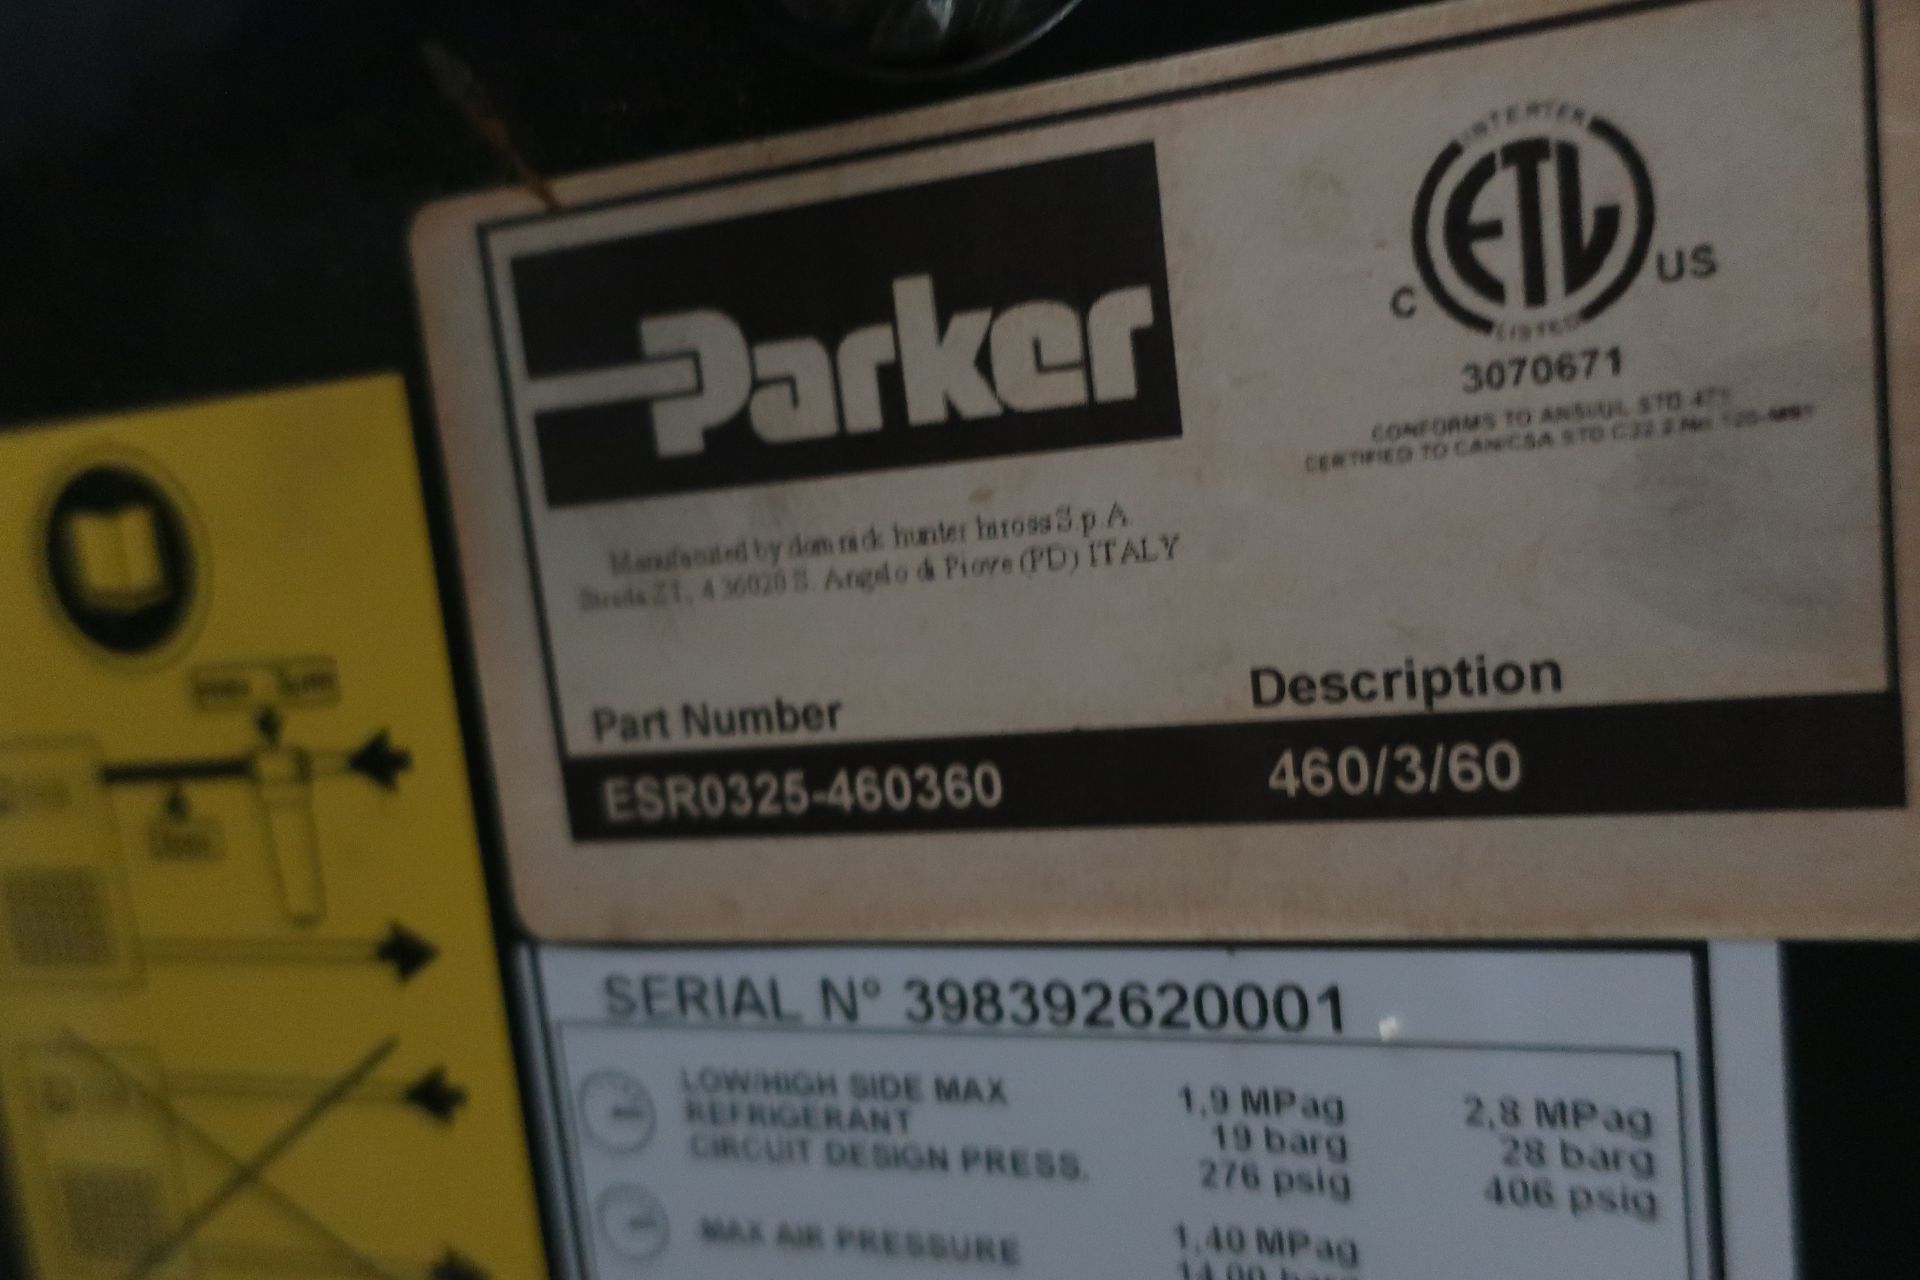 Parker Airtek ER-325 Air Dryer, S/N 398392620001, New 2013 - Image 3 of 4